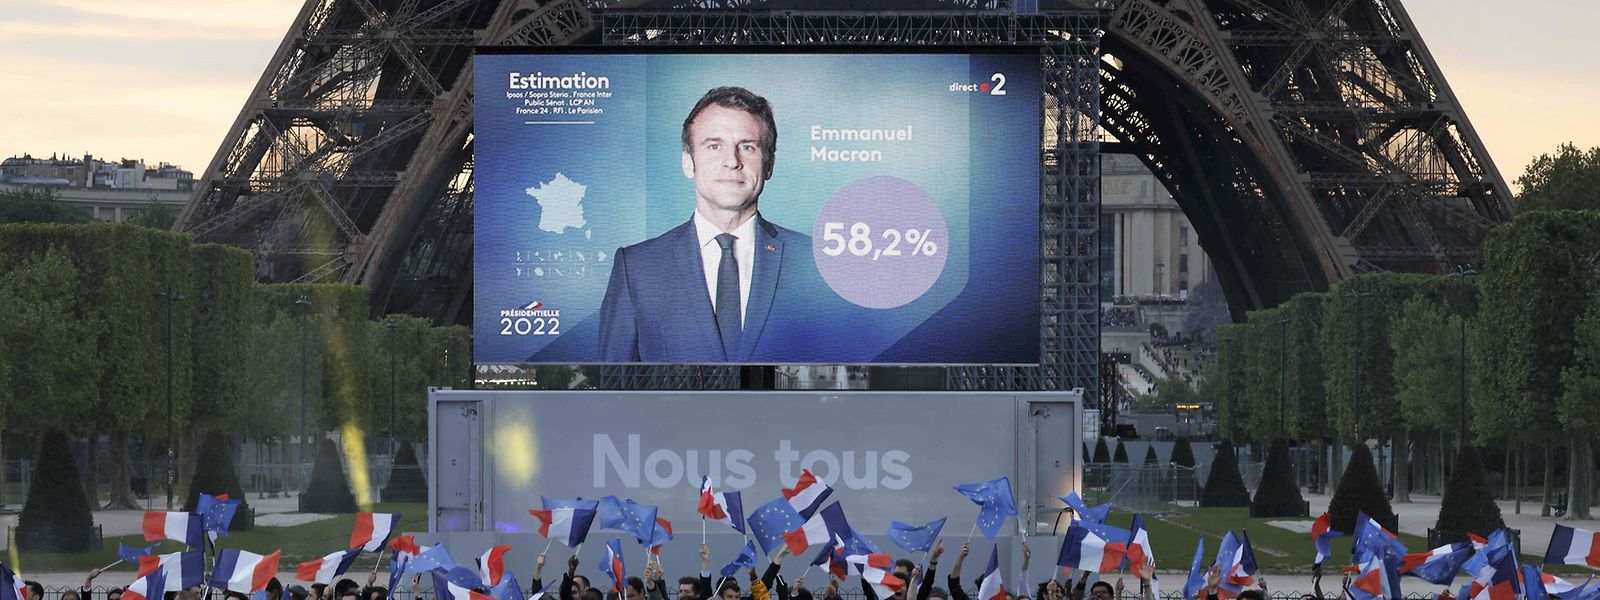 Wie die Sender France 2 und TF1 am Sonntagabend berichteten, setzte sich Emmanuel Macron deutlich gegen die rechtsnationale EU-Kritikerin Marine Le Pen durch. Der amtierende Präsident gewann laut Hochrechnungen von IPSOS die Stichwahl mit 58,2 Prozent der Stimmen. 